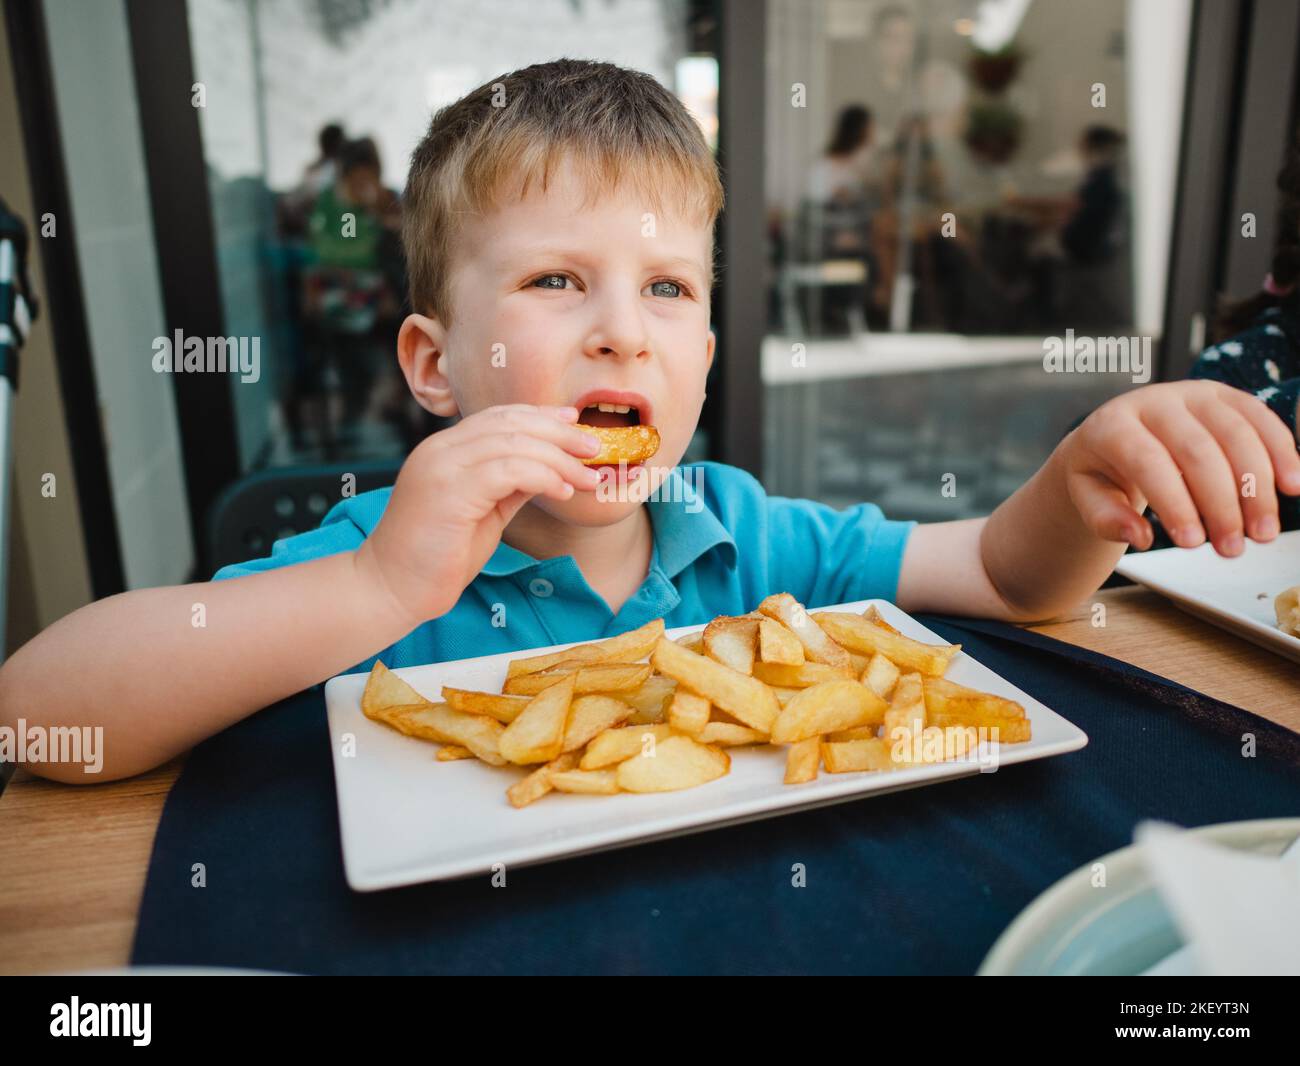 Petit enfant mangeant des frites Banque D'Images